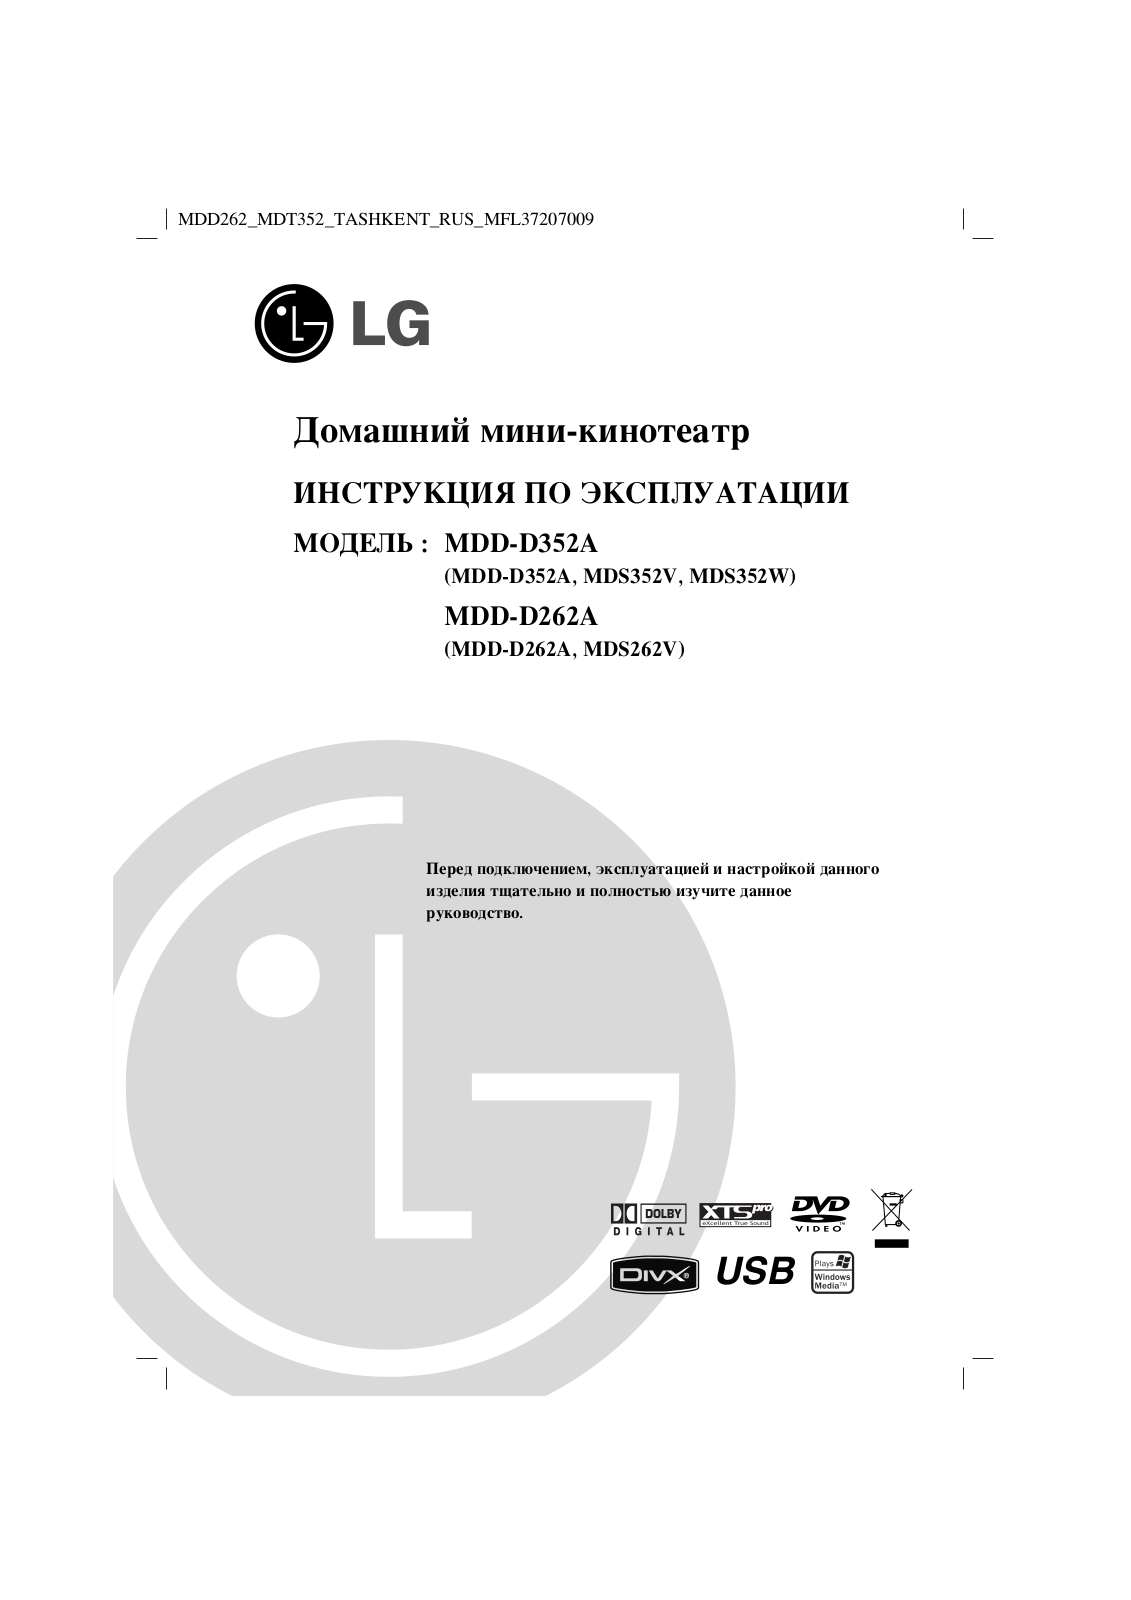 LG MDD-D352A User Manual